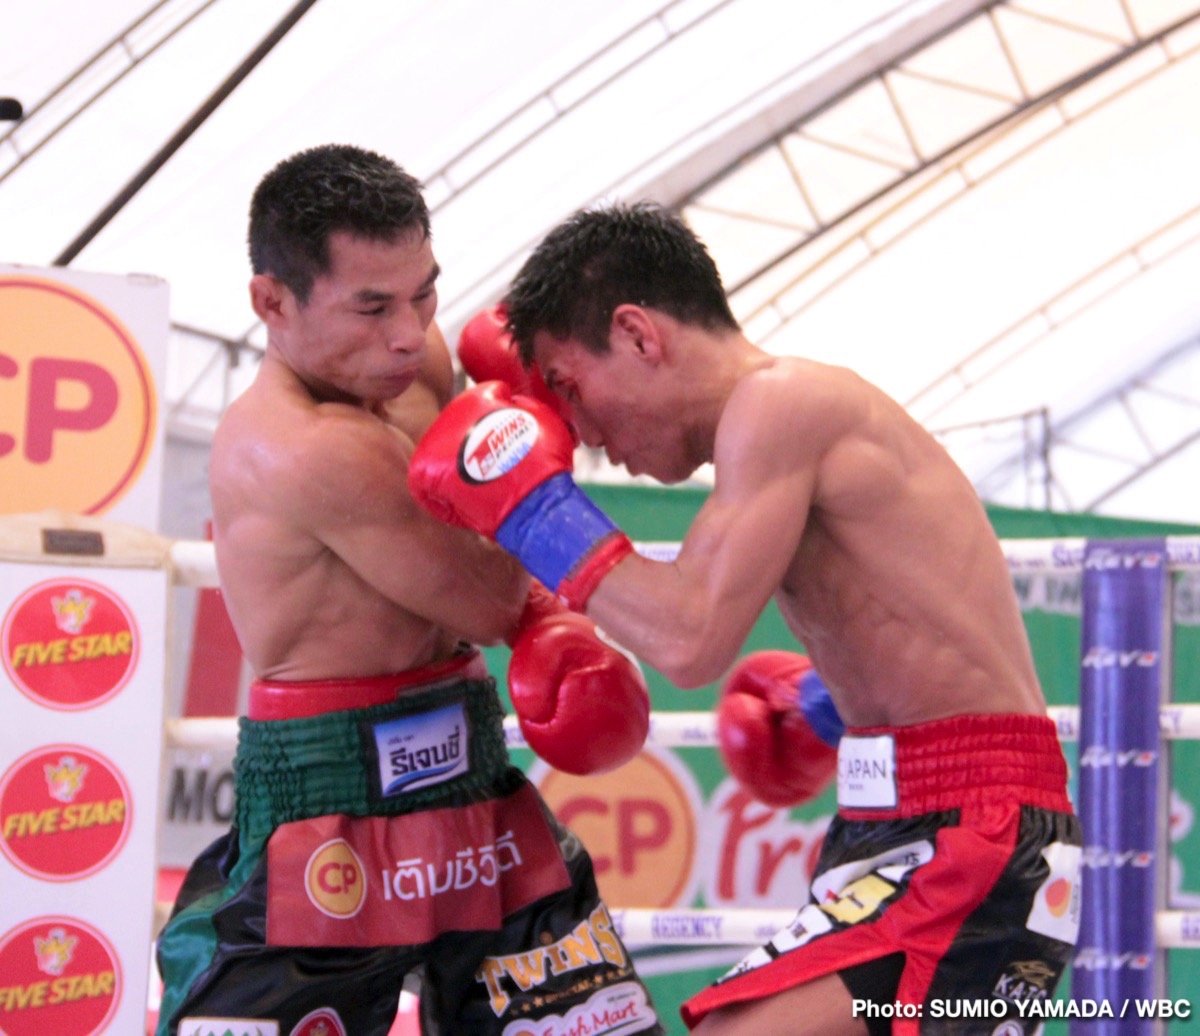 Tatsuya Fukuhara Wanheng Menayothin Boxing News Boxing Results